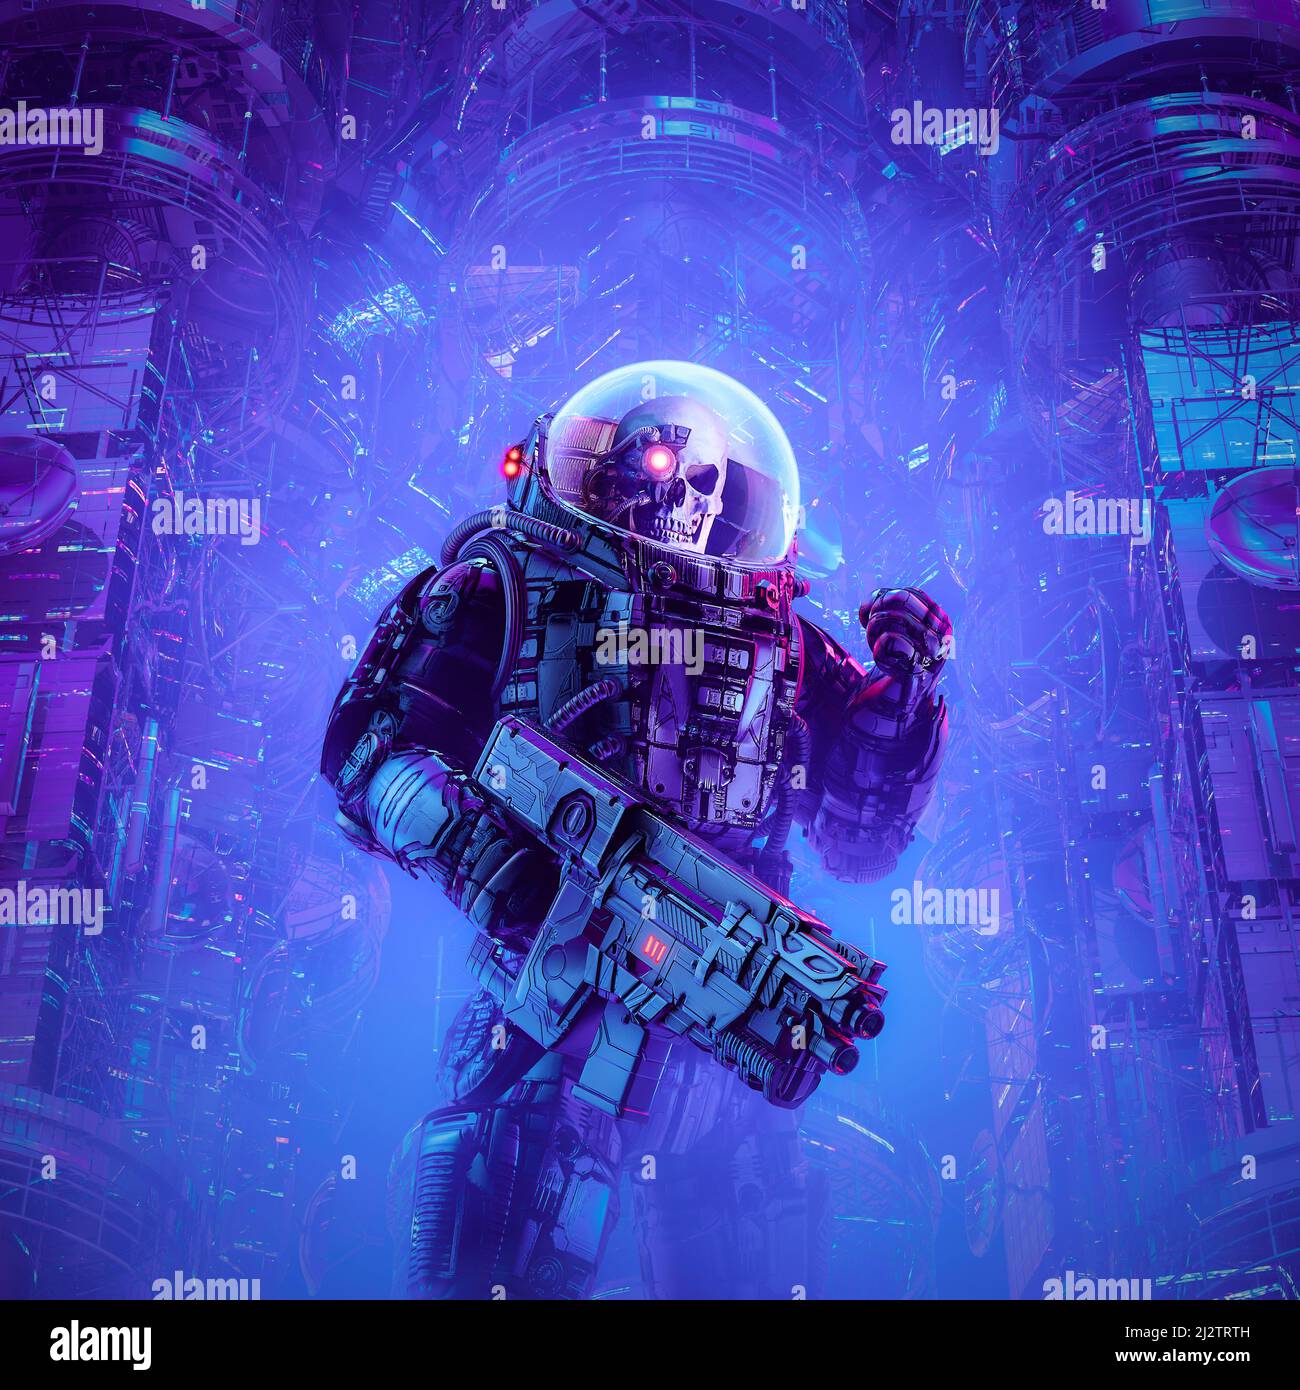 Tod auf Patrouille - 3D Illustration einer Science-Fiction-Szene, die einen bösen Schädel zeigt, dem Astronaut-Weltraumsoldat mit einem Laserpuls-Gewehr gegenübergestellt wurde Stockfoto